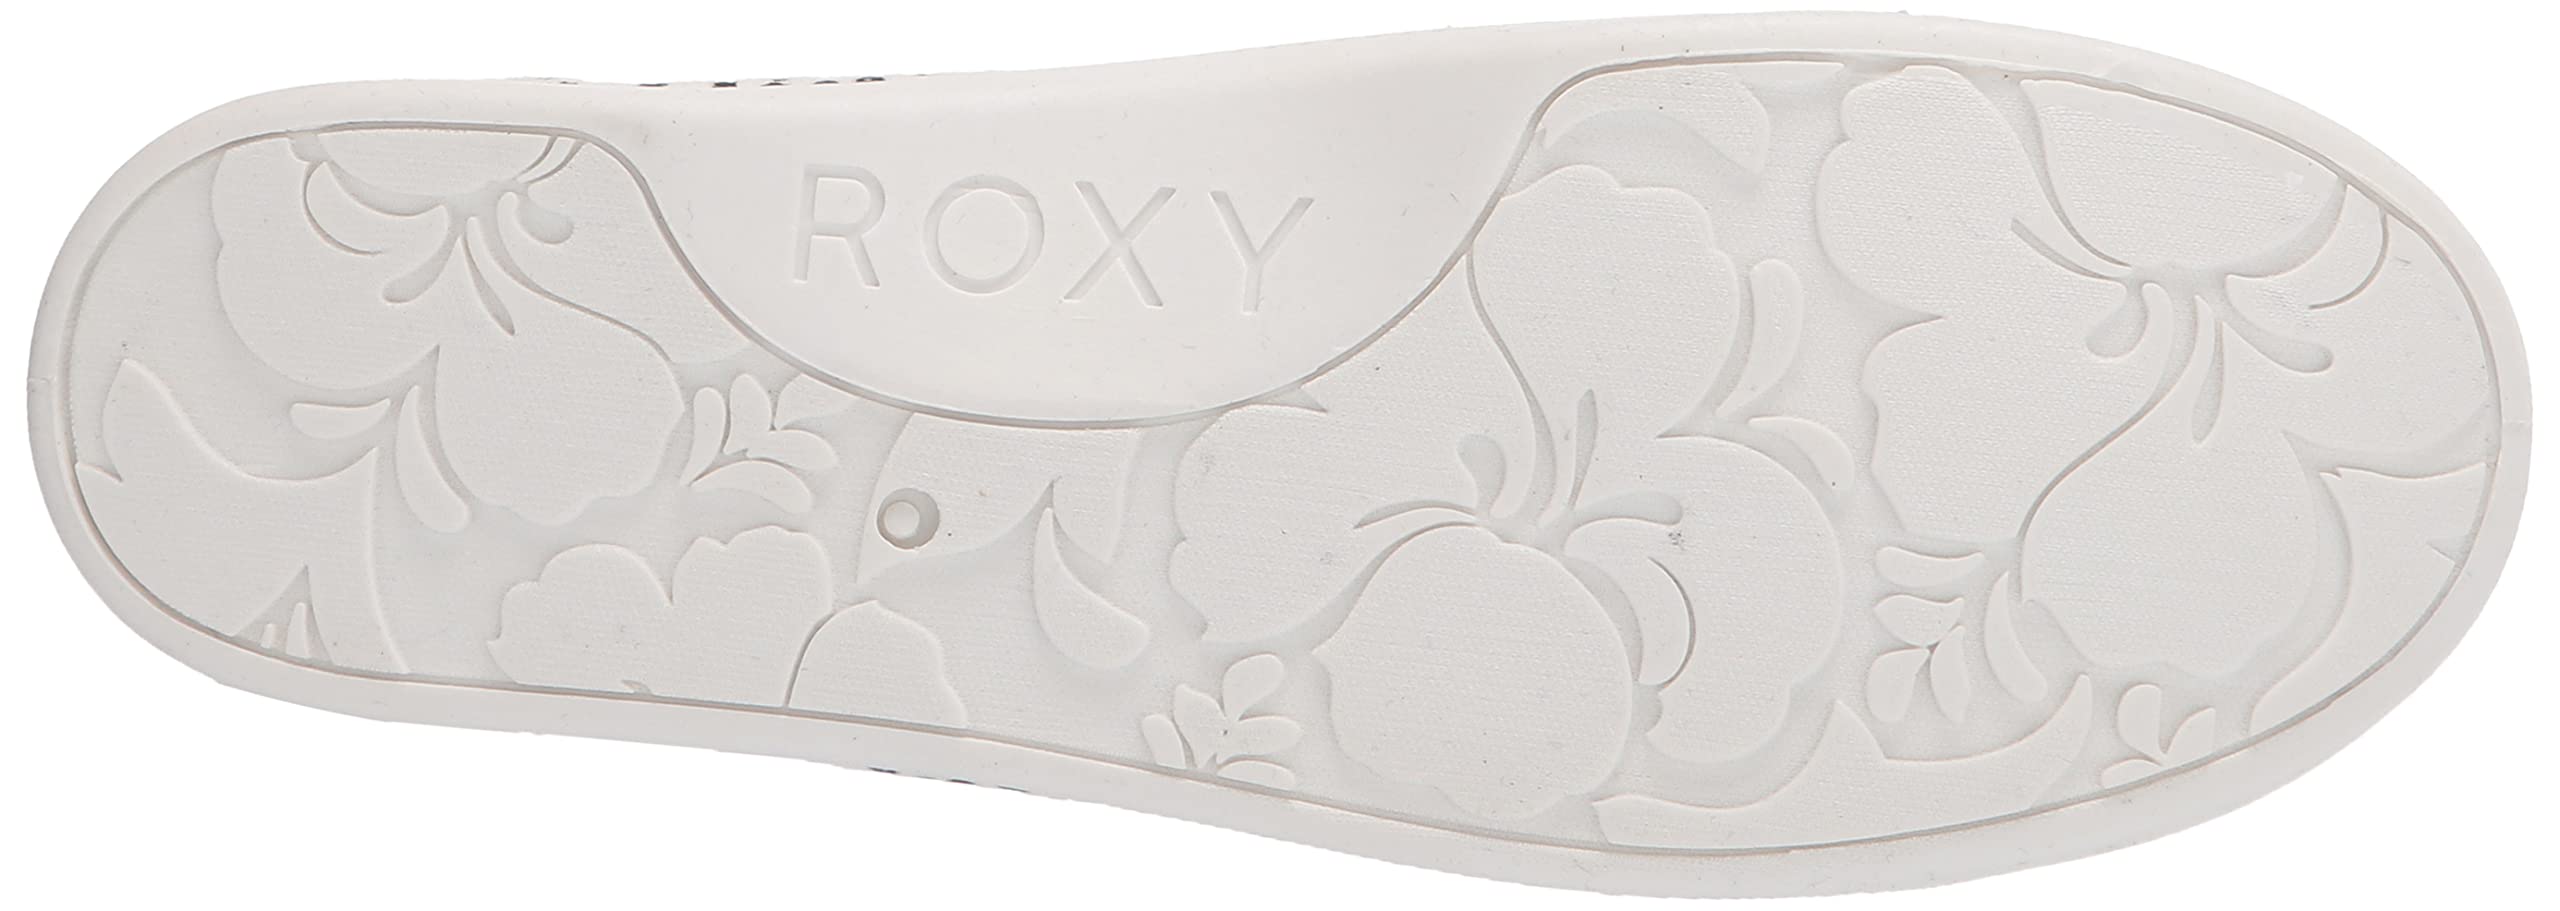 Roxy Women's Rory Slip On Sneaker, Black/White Exc, 7